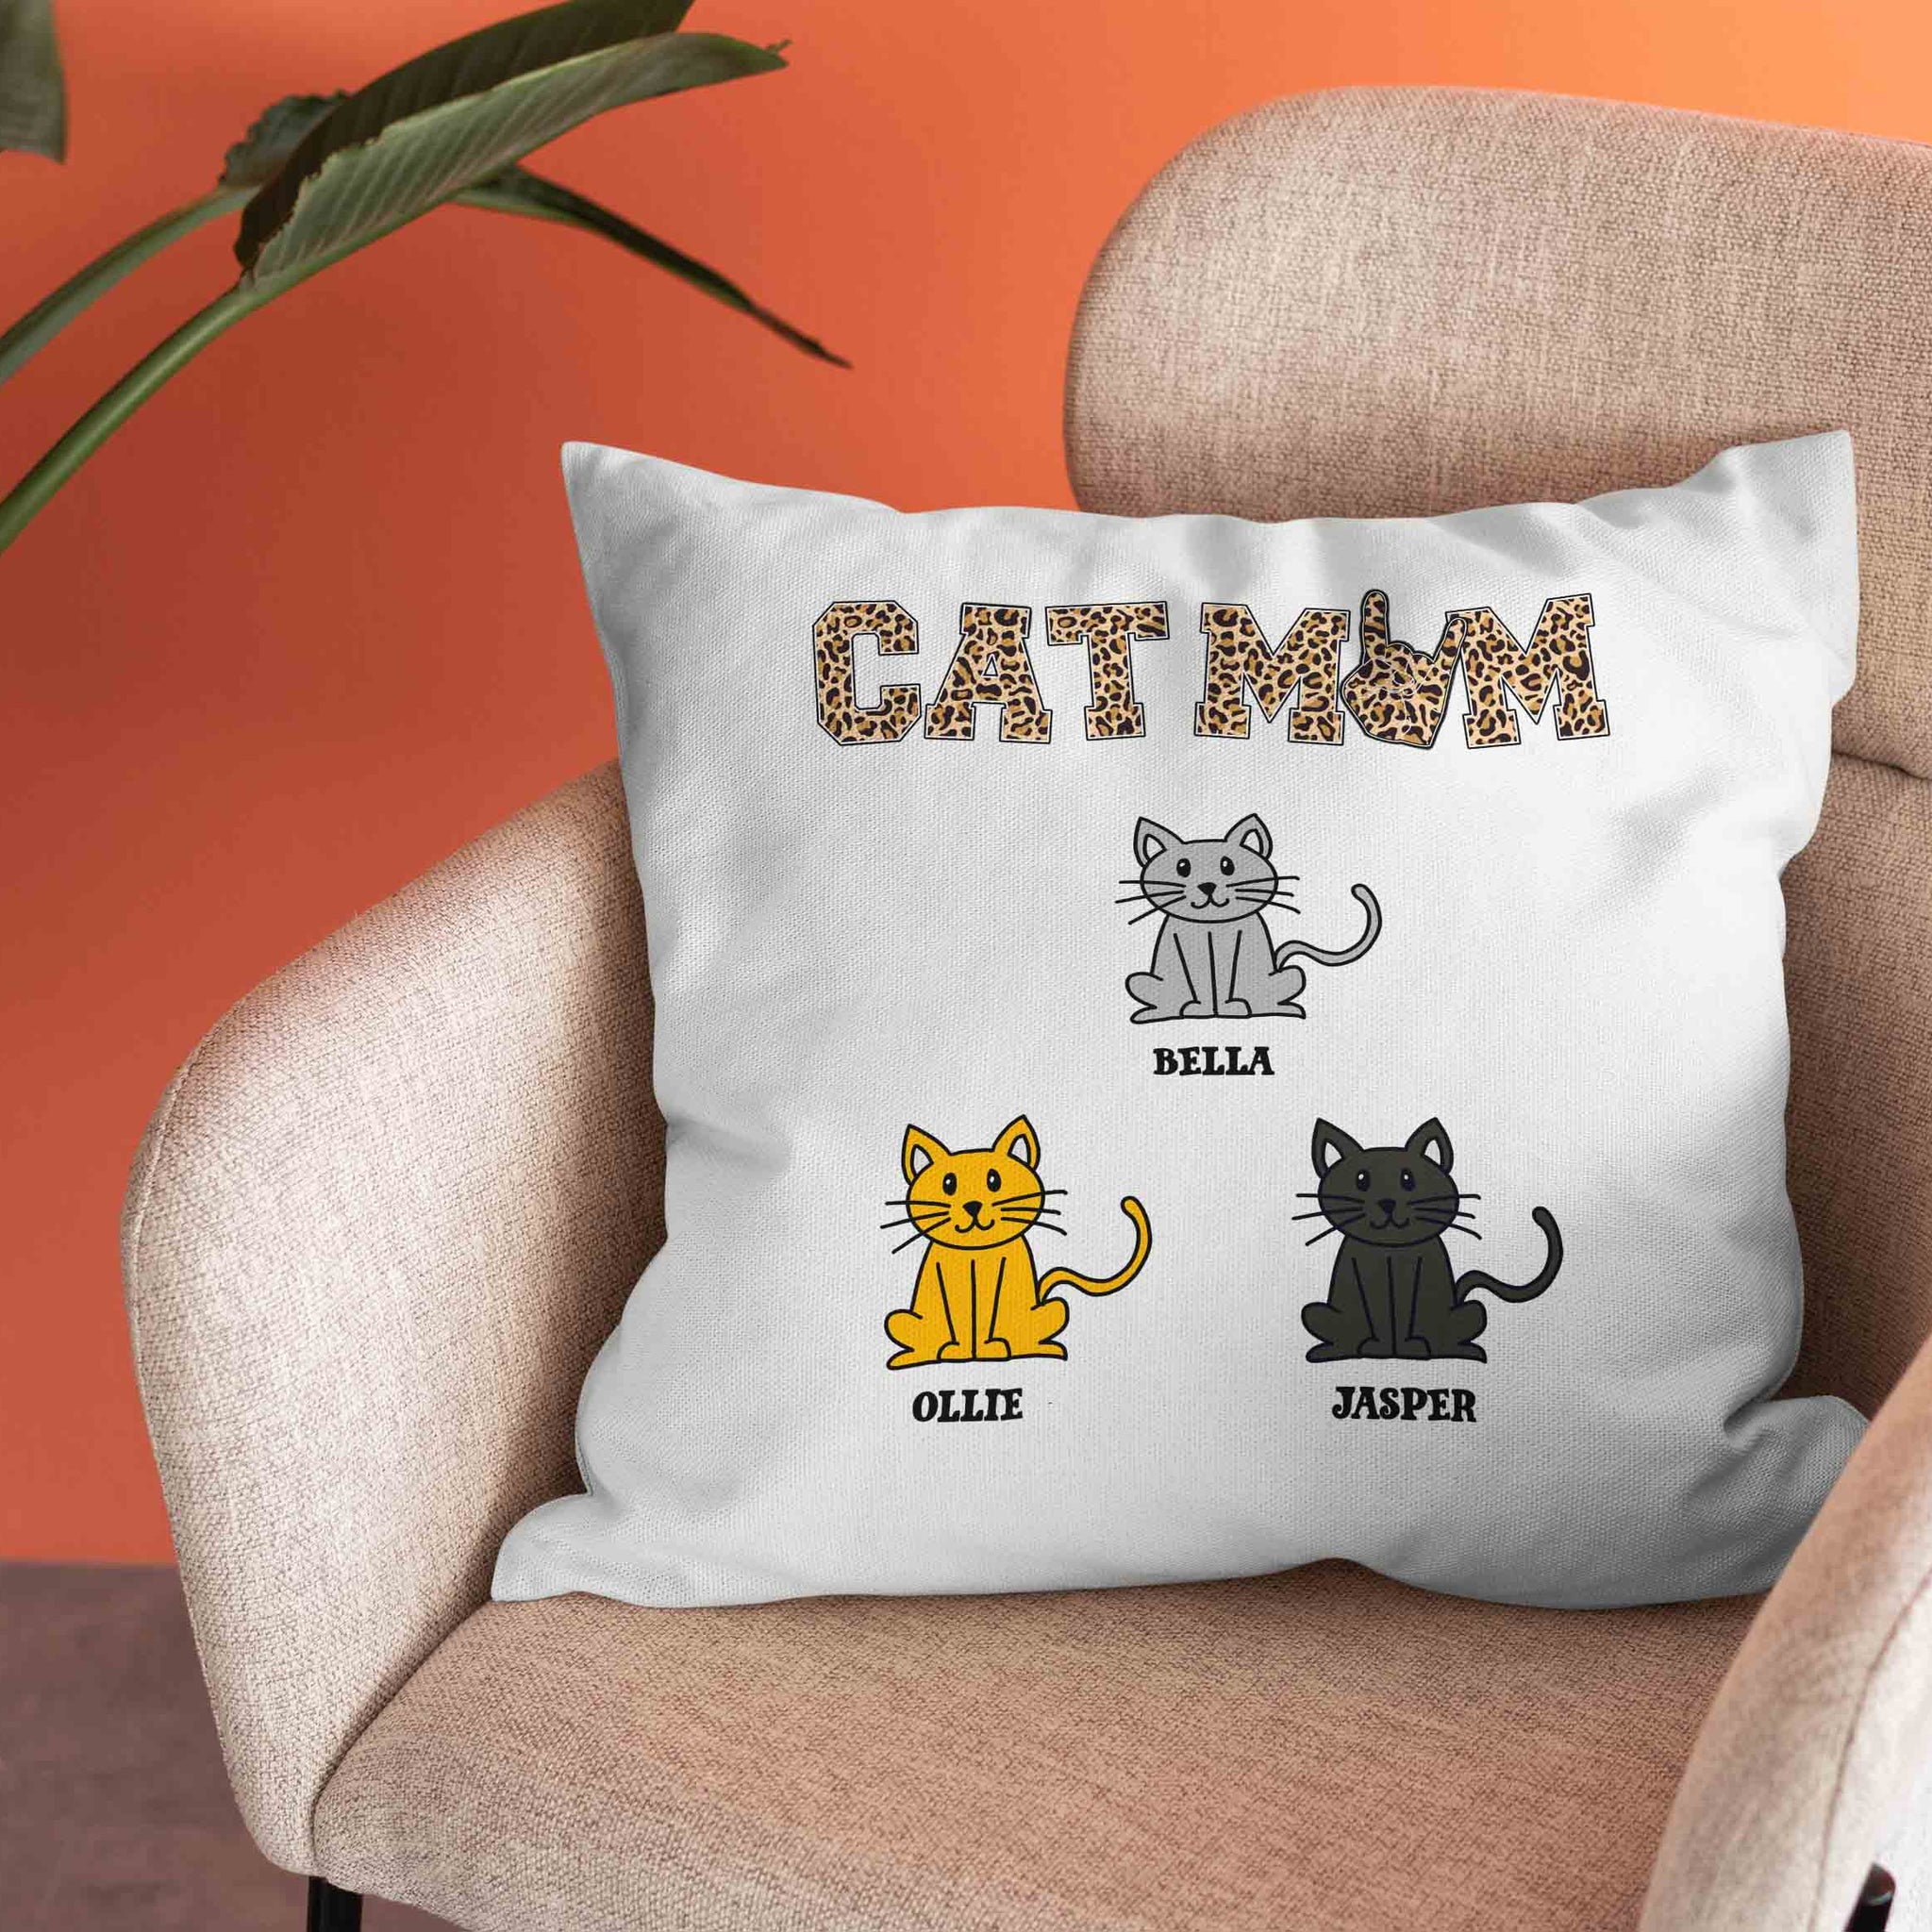 Cat Mom Pillow, Cat Pillow, Pet Pillow, Personalized Name Pillows, Family Pillow, Pillow Gift